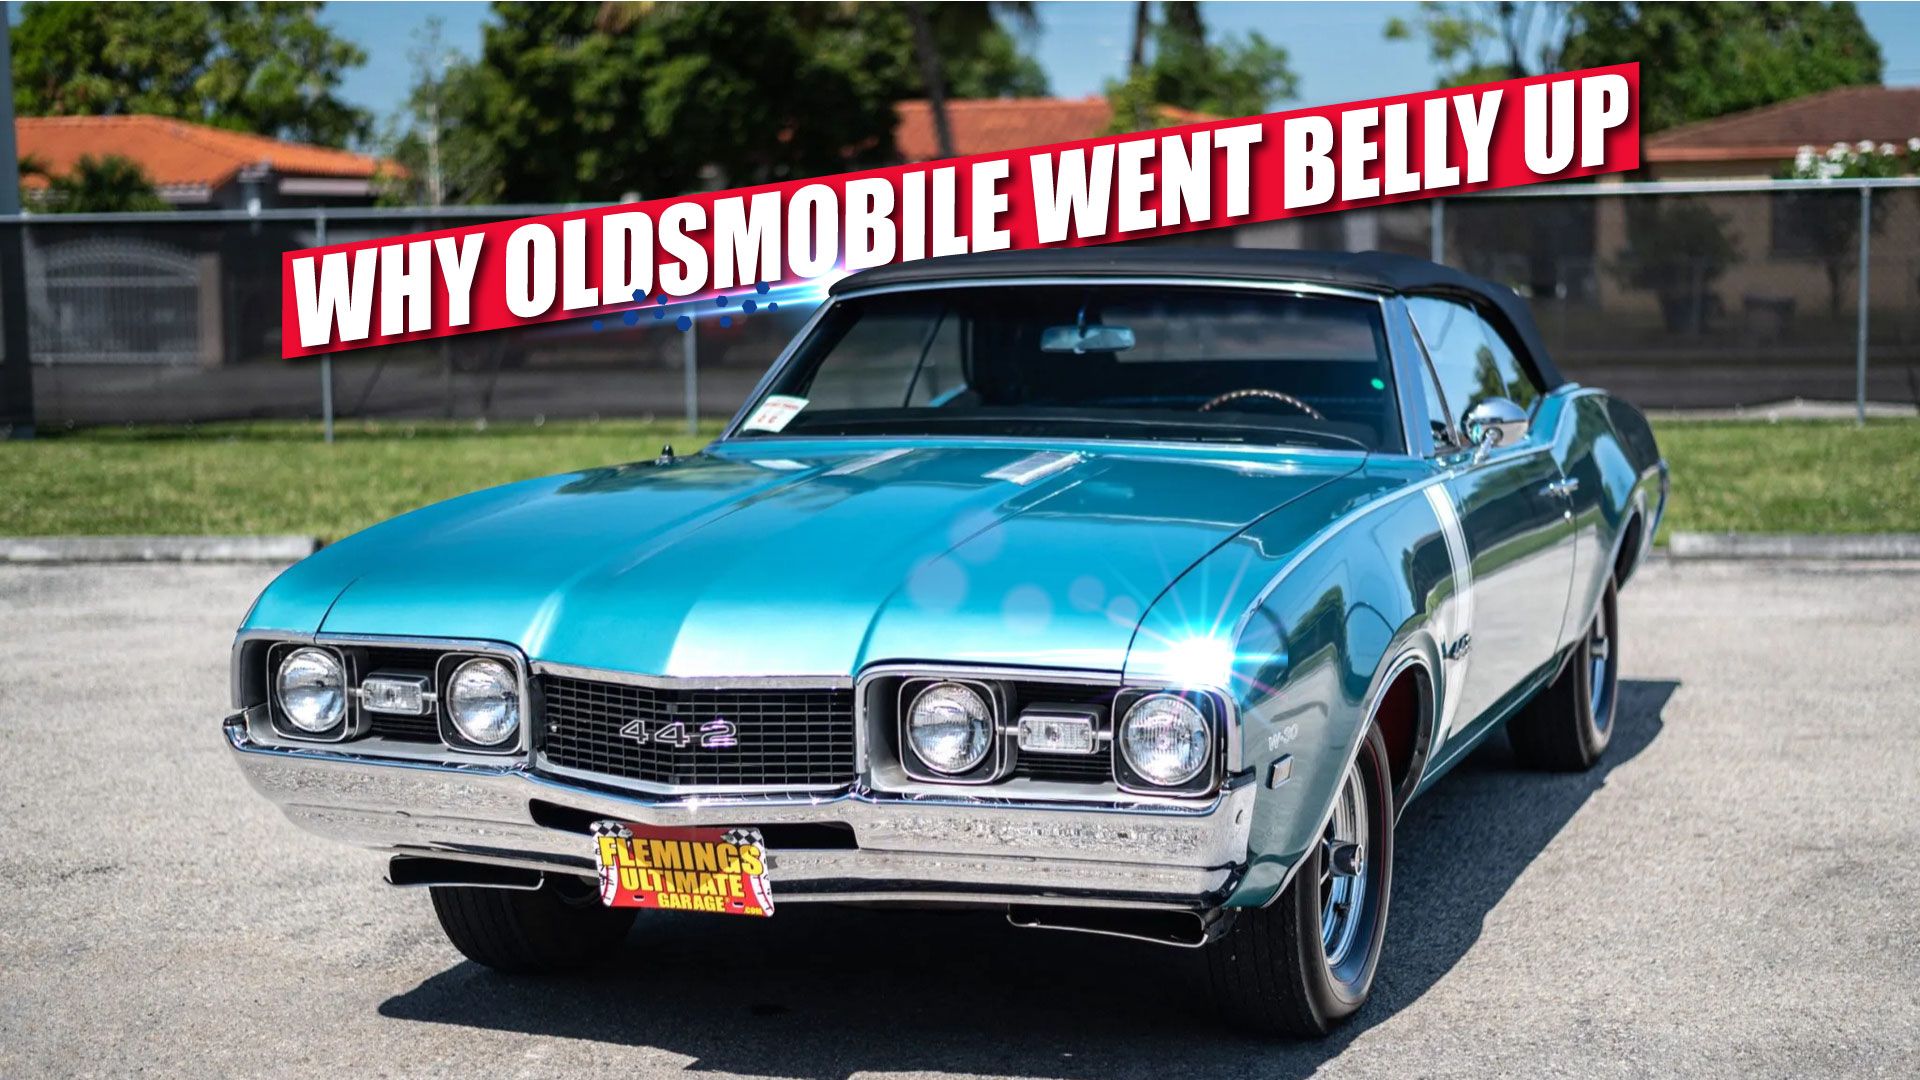 Oldsmobile belly up